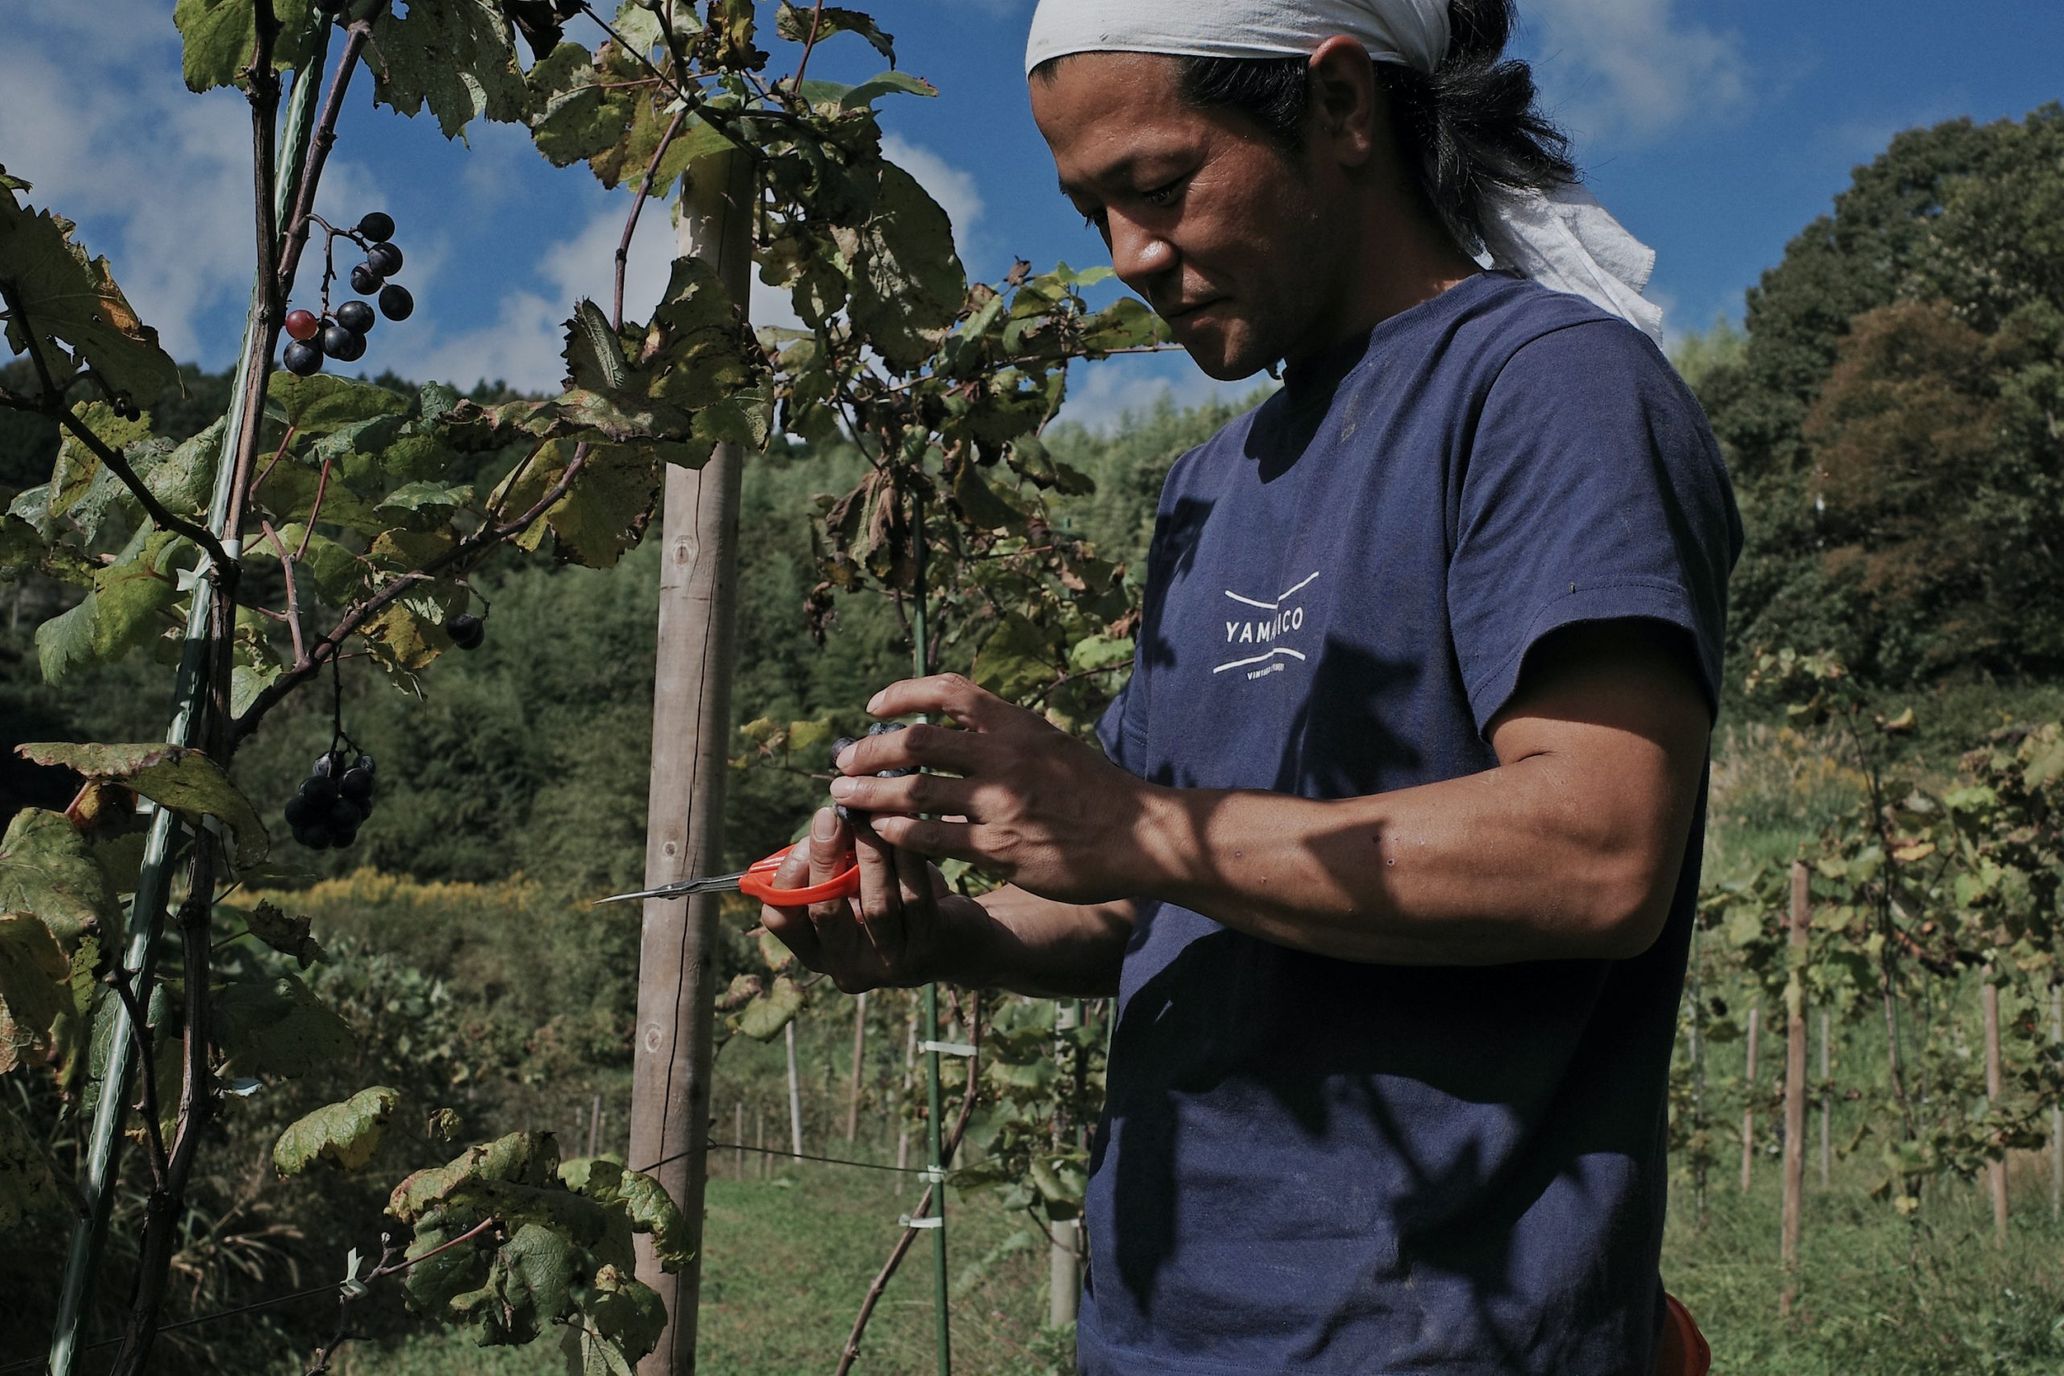 羽黒の山伏、岡山の過疎地でナチュラルワインをつくる ―収穫編―